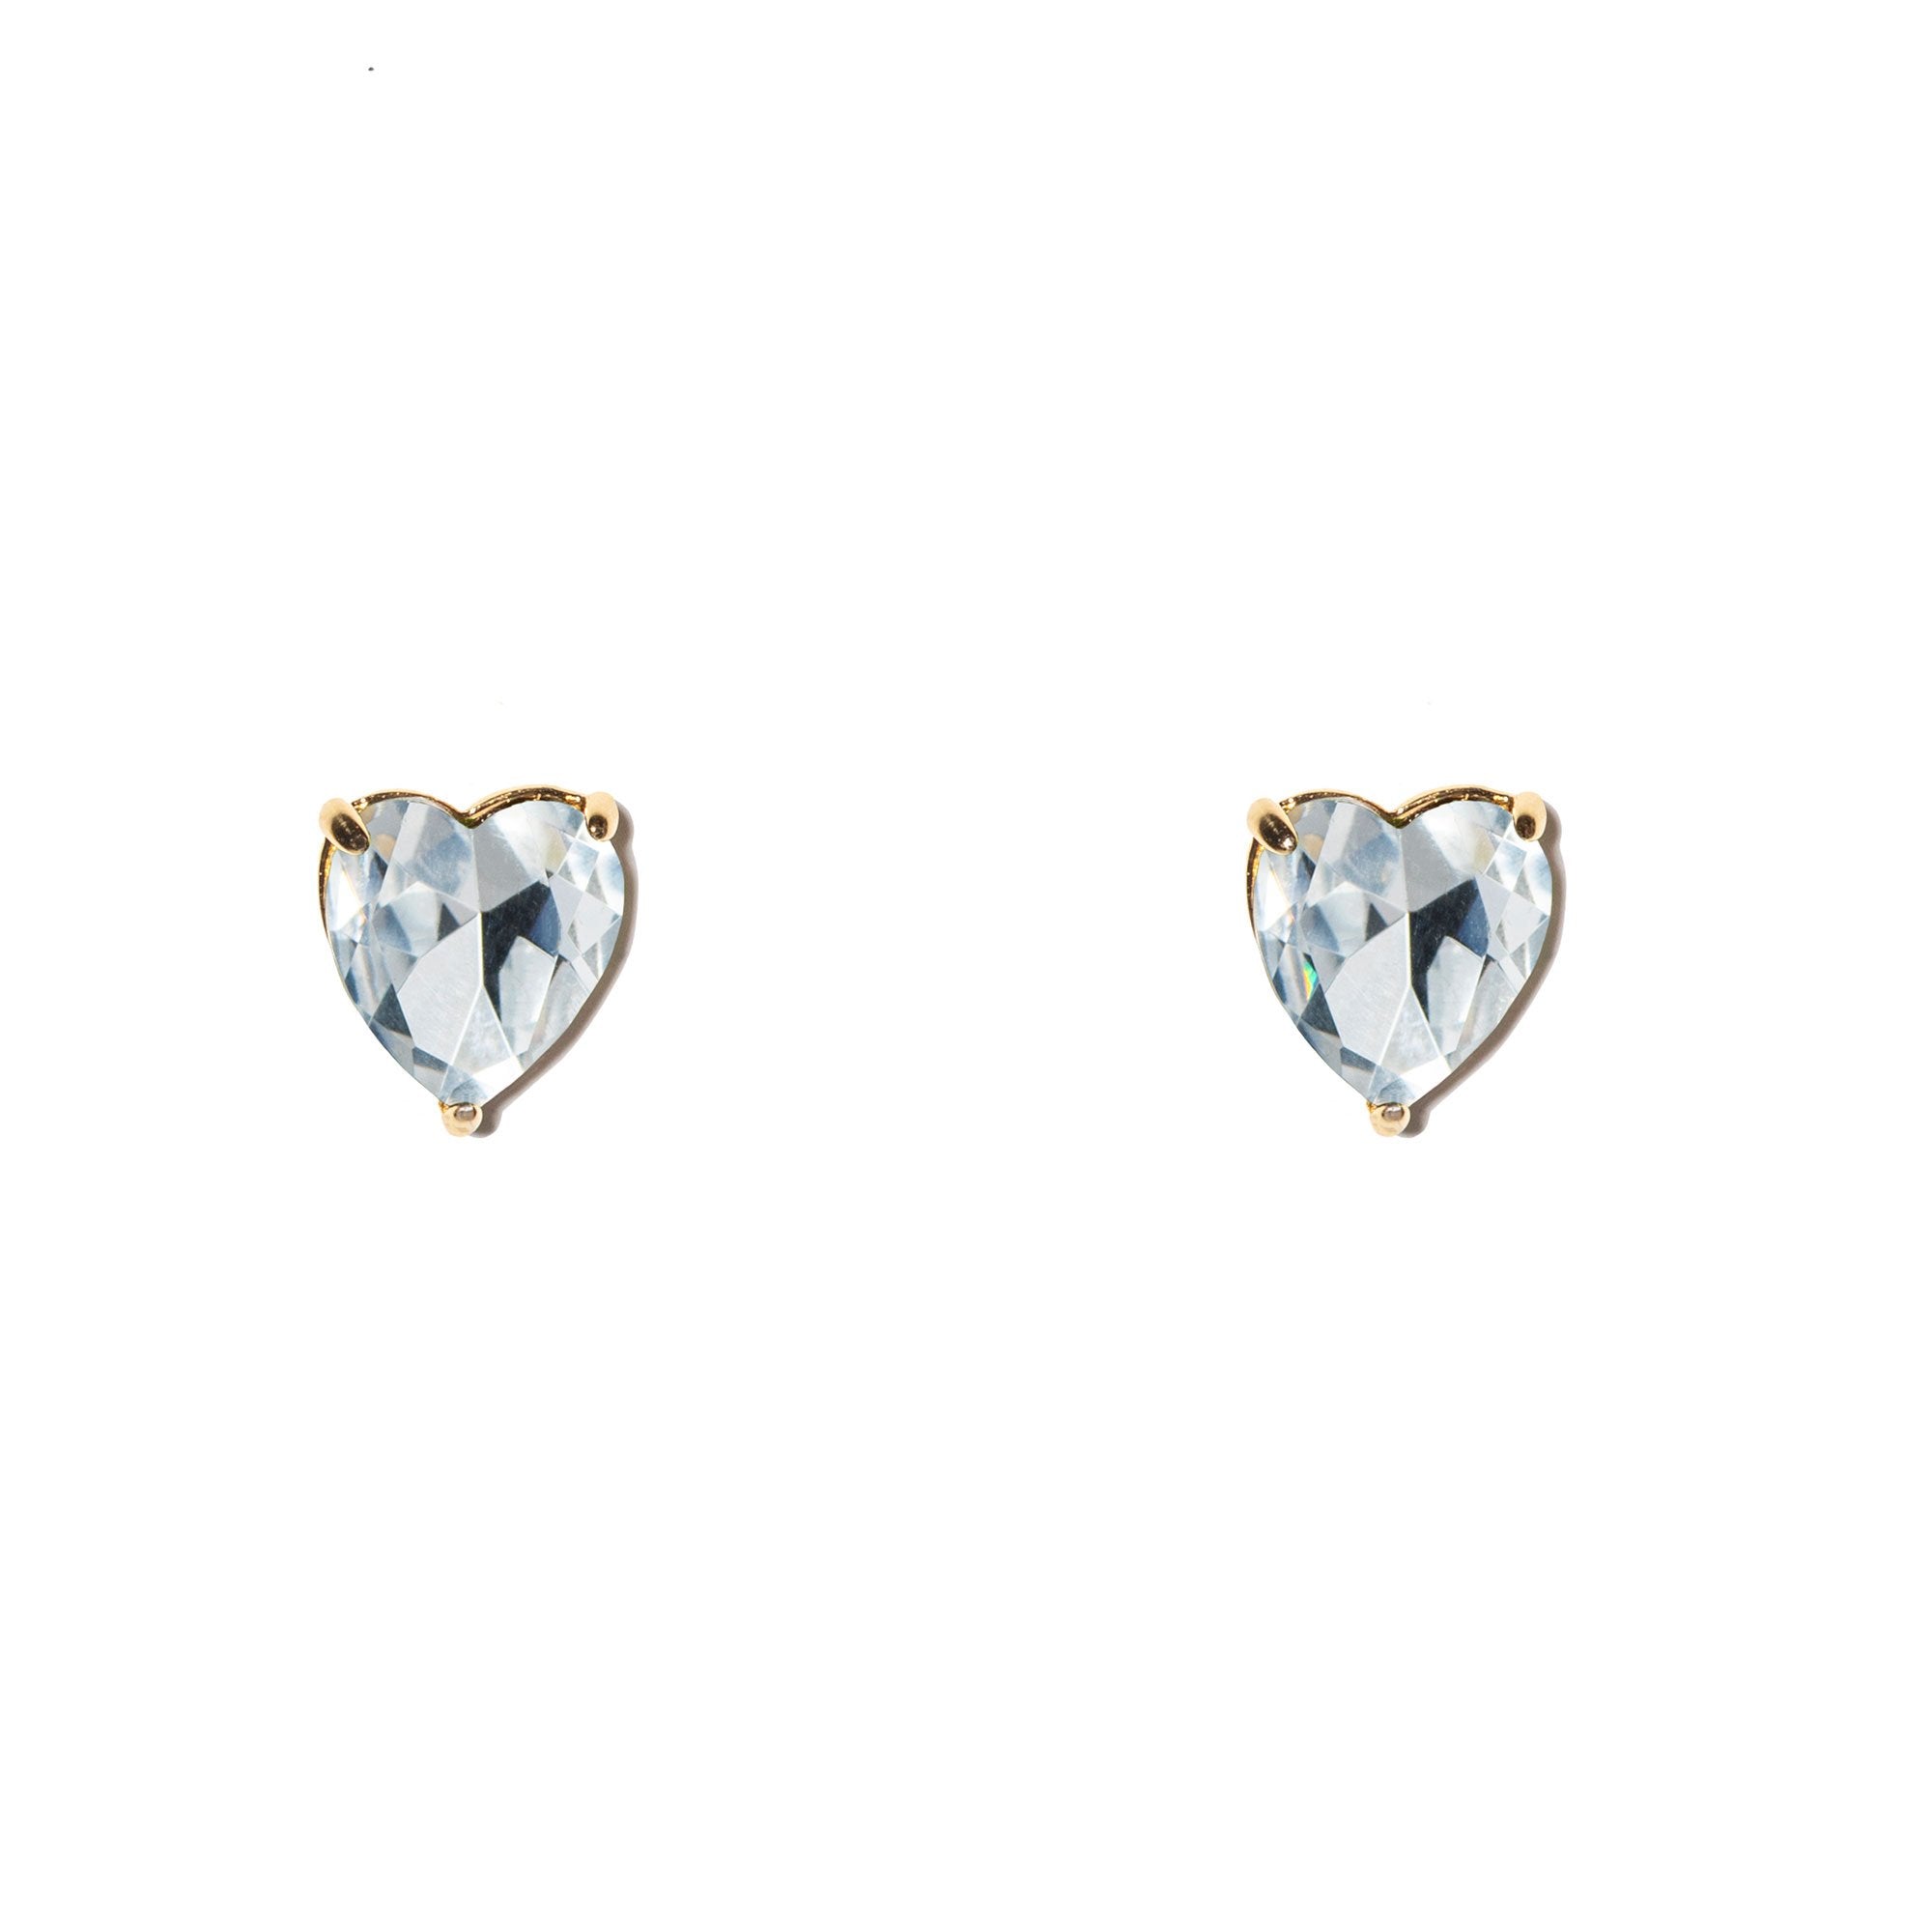 Silver Heart Stud Earrings, Crystal Heart Earrings, Heart Shaped Earrings, Swarovski  Earrings, Romantic Gift